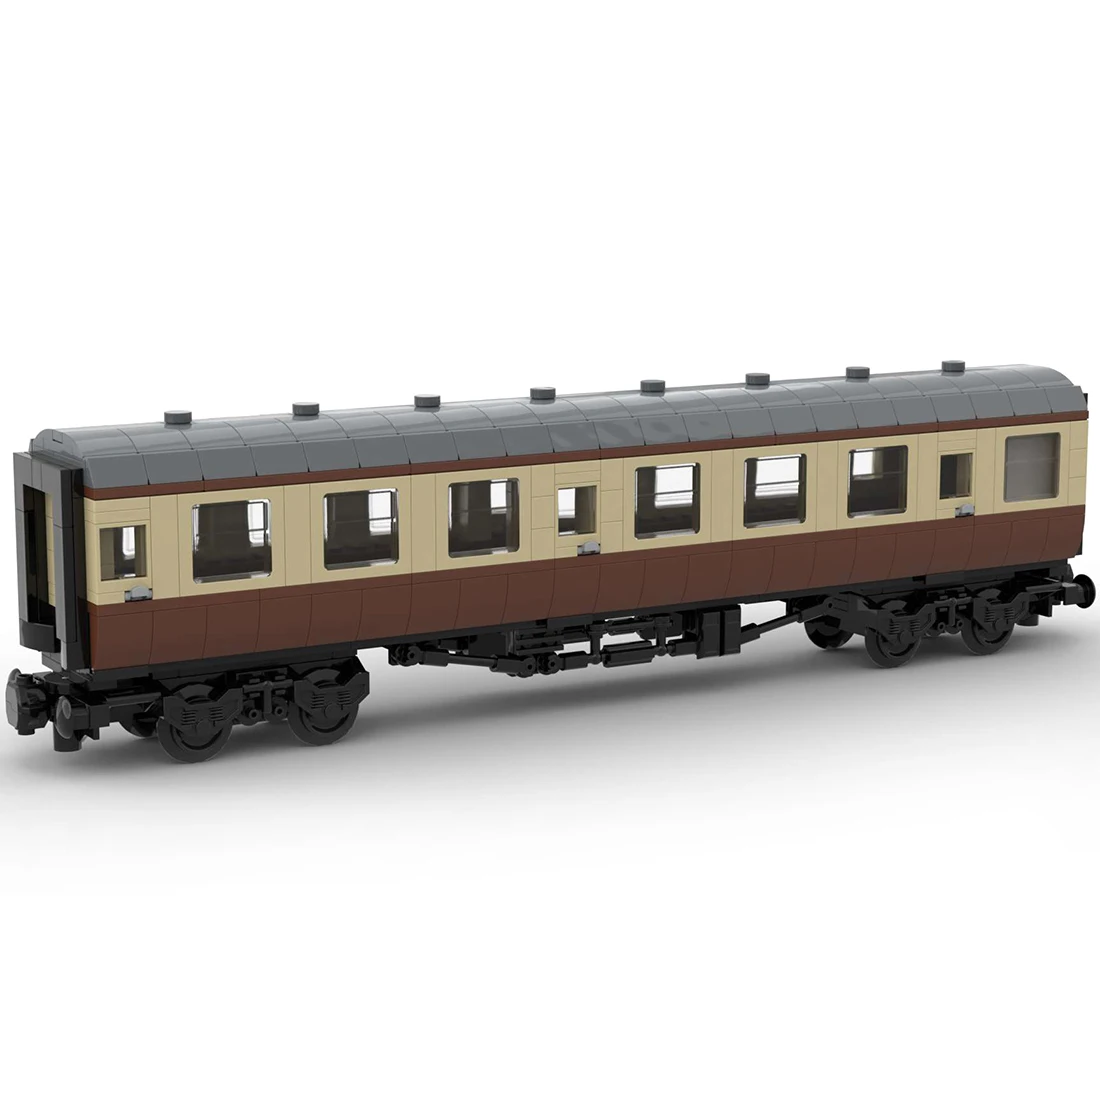 Авторизованный MOC-67504 692шт + статическая версия шириной 6 дюймов, вагон British Rail Mark 1, коричневые строительные блоки, набор поездов